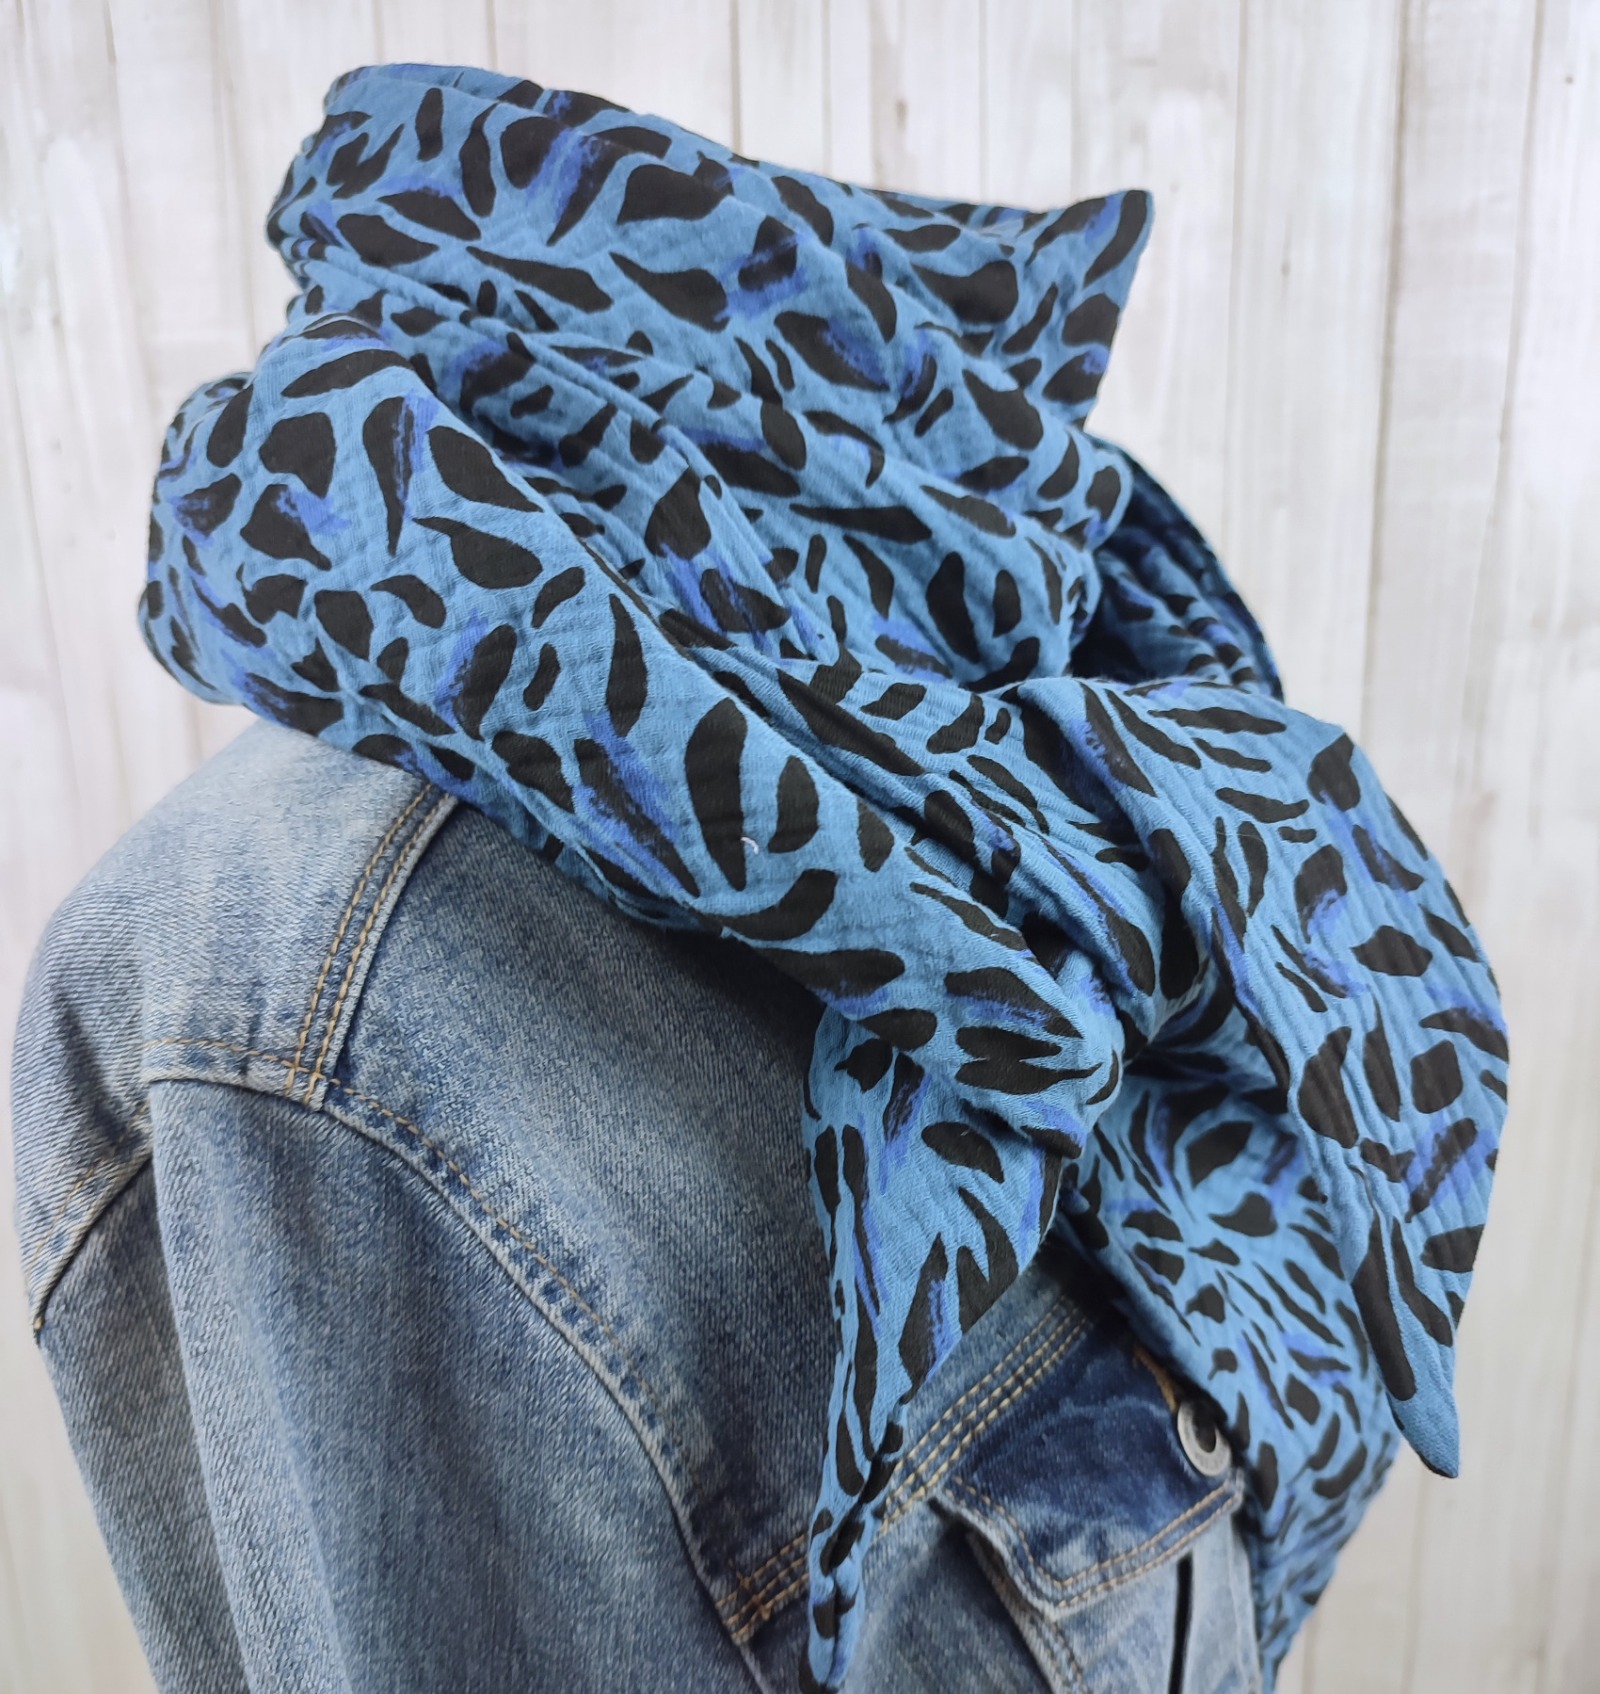 Tuch Dreieckstuch Musselin Damen Schal jeansblau mit schönem Print in schwarz und blau XXL Tuch aus